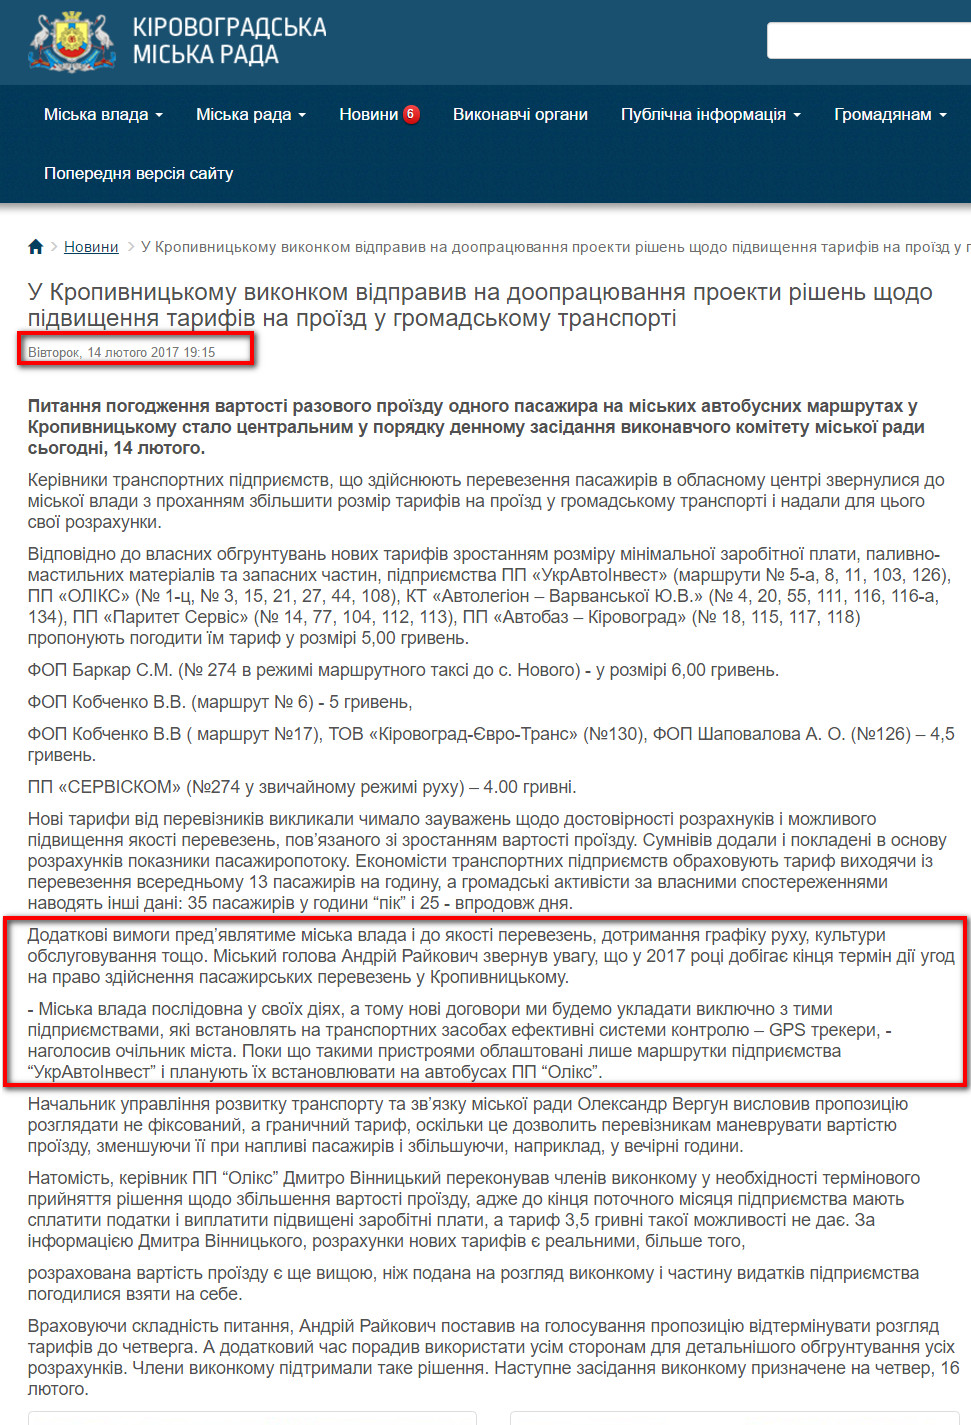 https://www.kr-rada.gov.ua/news/u-kropivnitskomu-vikonkom-vidpraviv-na-doopratsyuvannya-proekti-rishen-shodo-pidvishennya-tarifiv-na-proyizd-u-gromadskomu-transporti.html